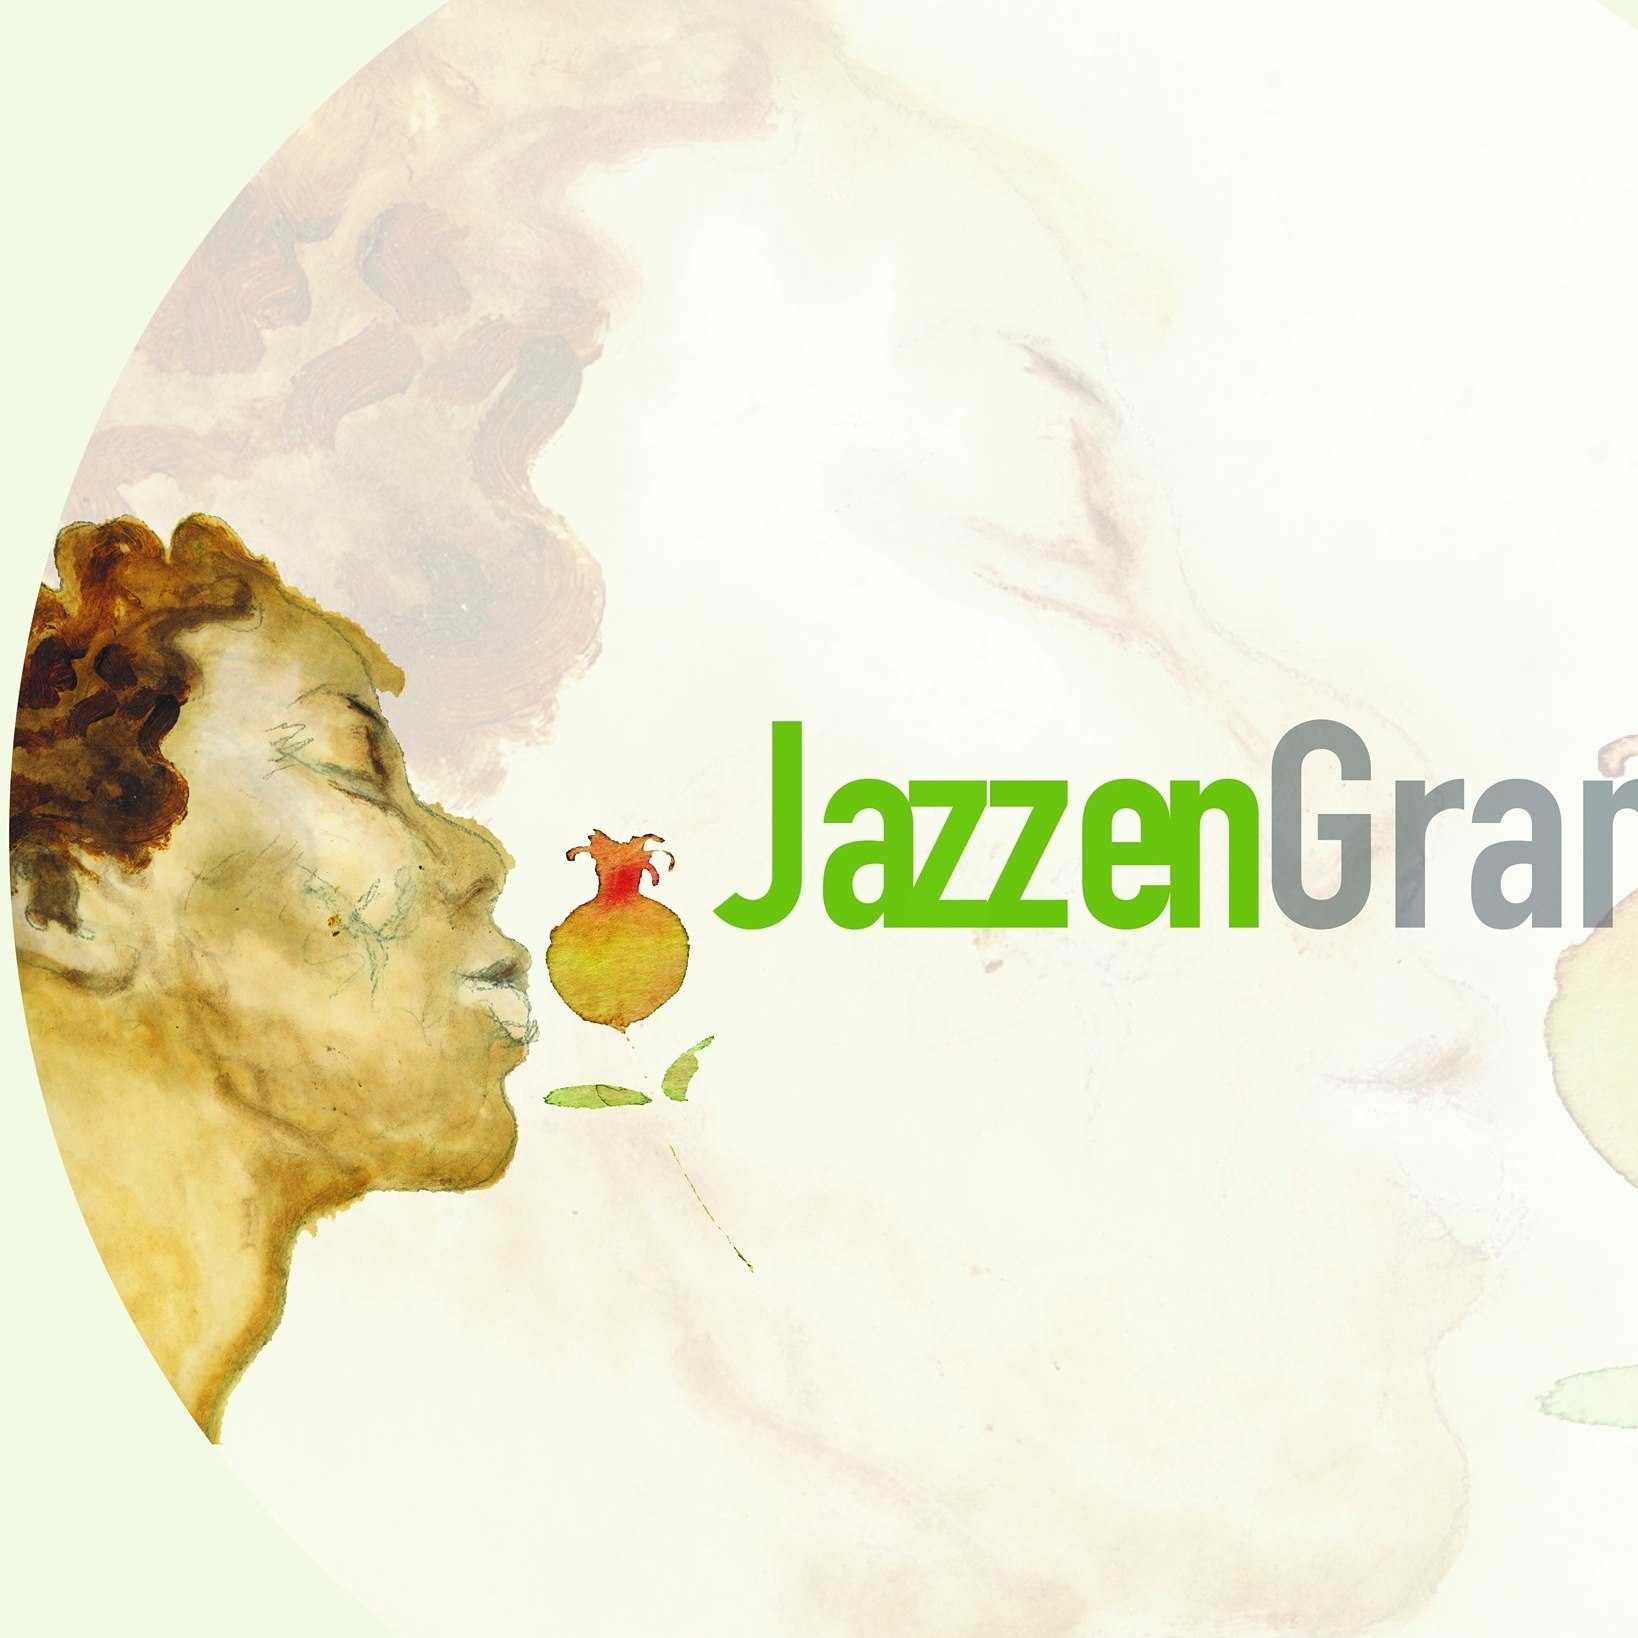 International Jazz Festival in Granada